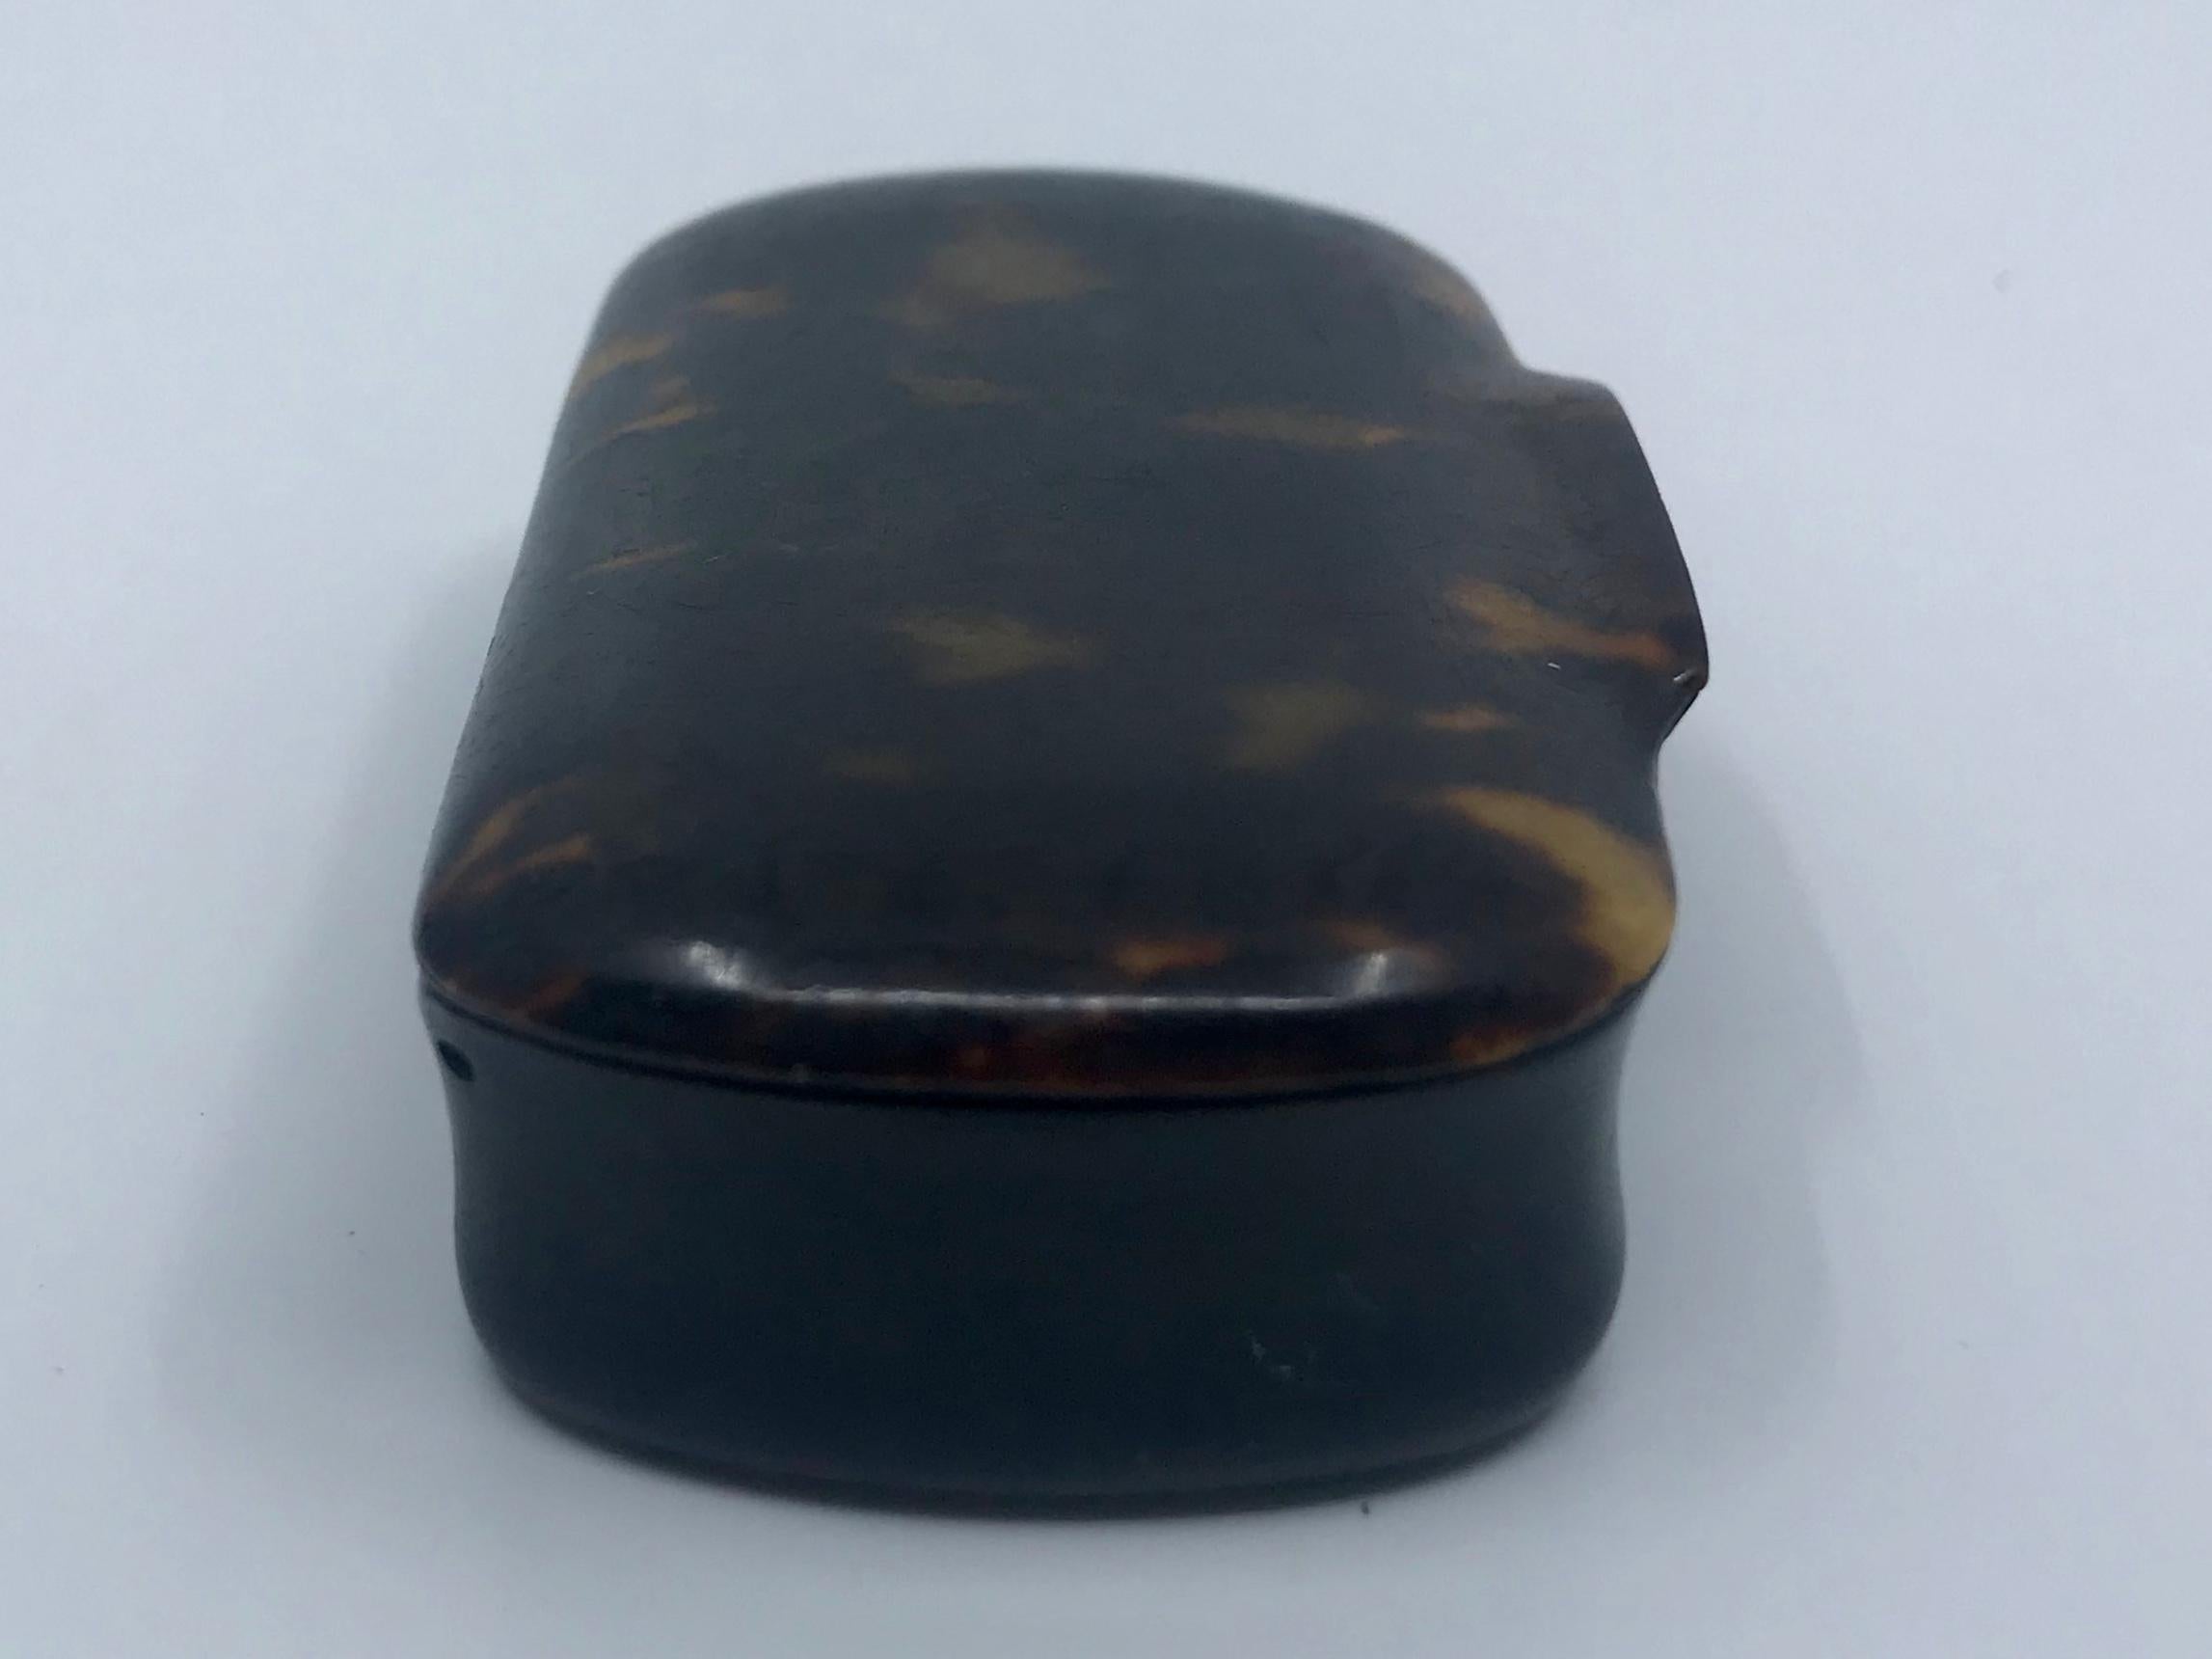 Boîte en écaille de tortue anglaise. Tabatière à couvercle de forme ovoïde avec poignée intégrée en écaille de tortue richement décorée, Angleterre, vers 1900.
Dimensions : 3.5